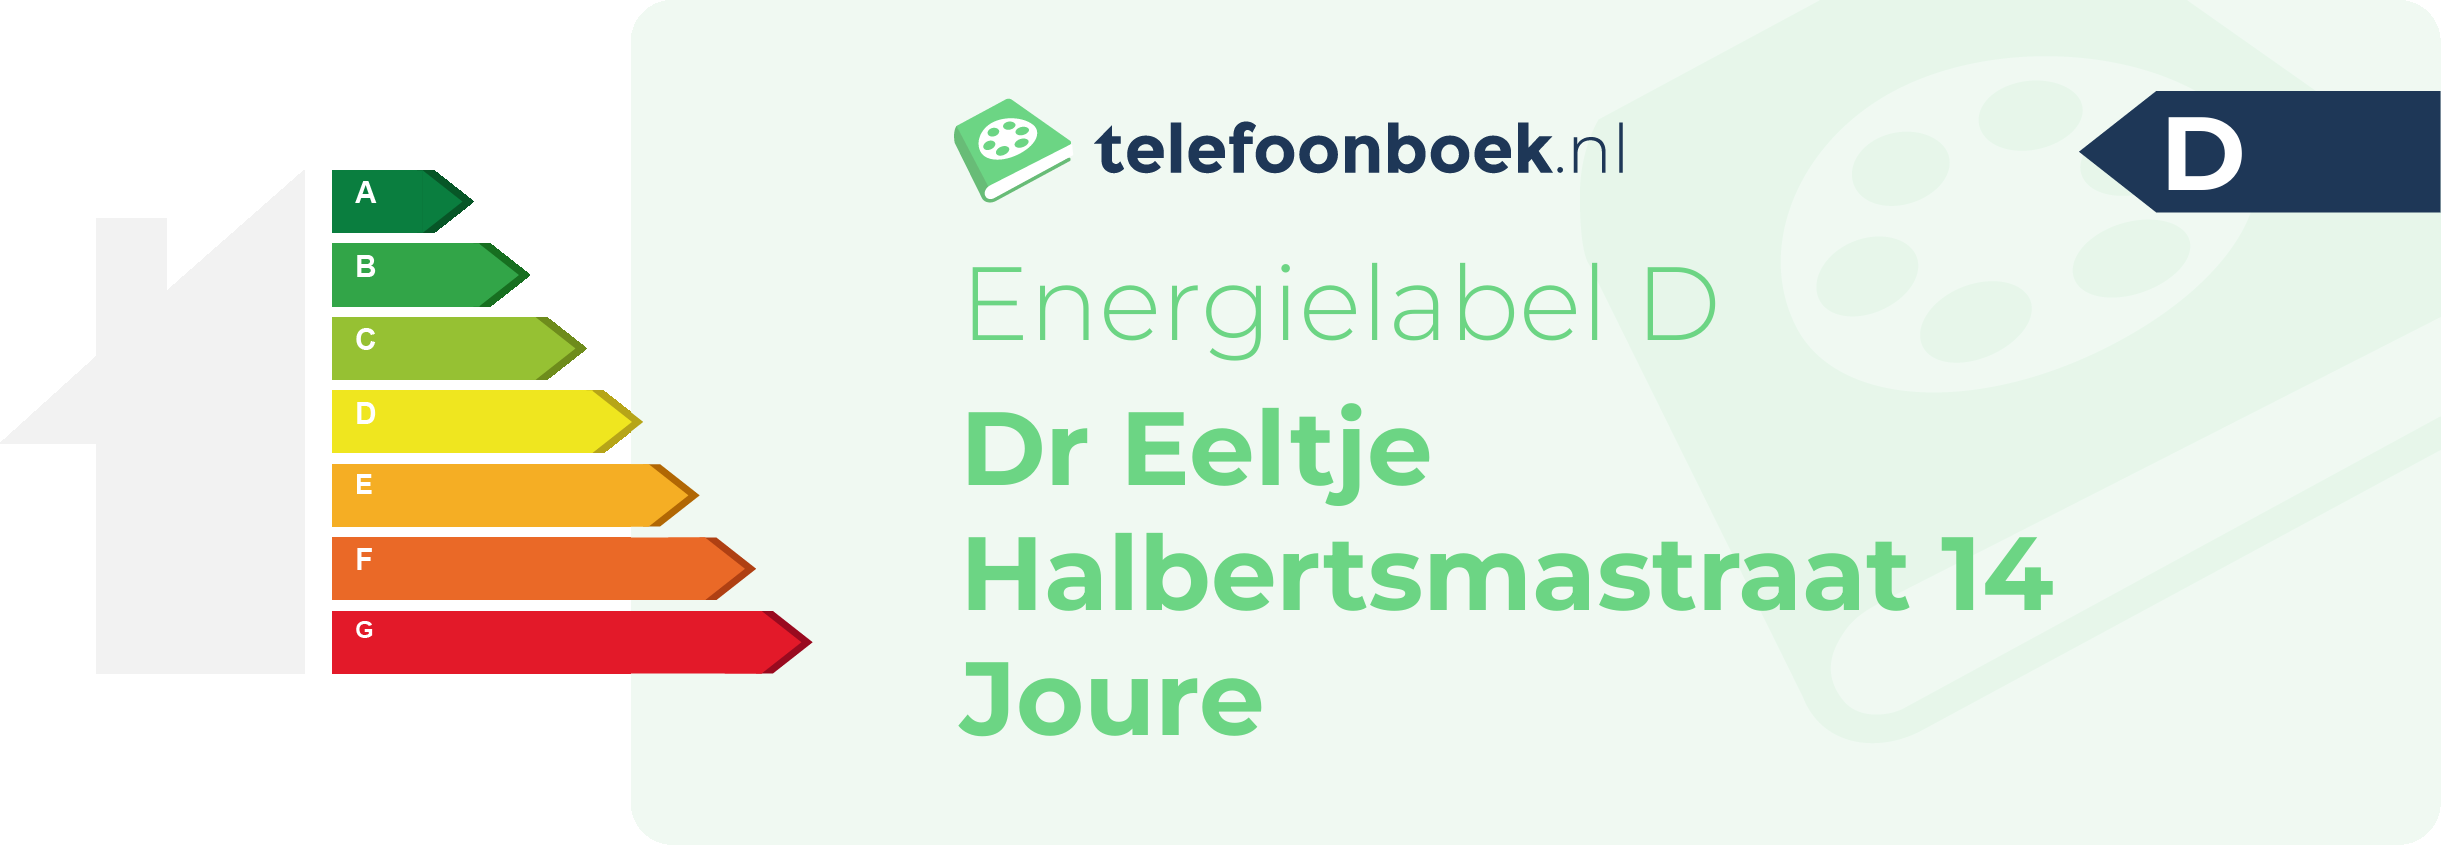 Energielabel Dr Eeltje Halbertsmastraat 14 Joure